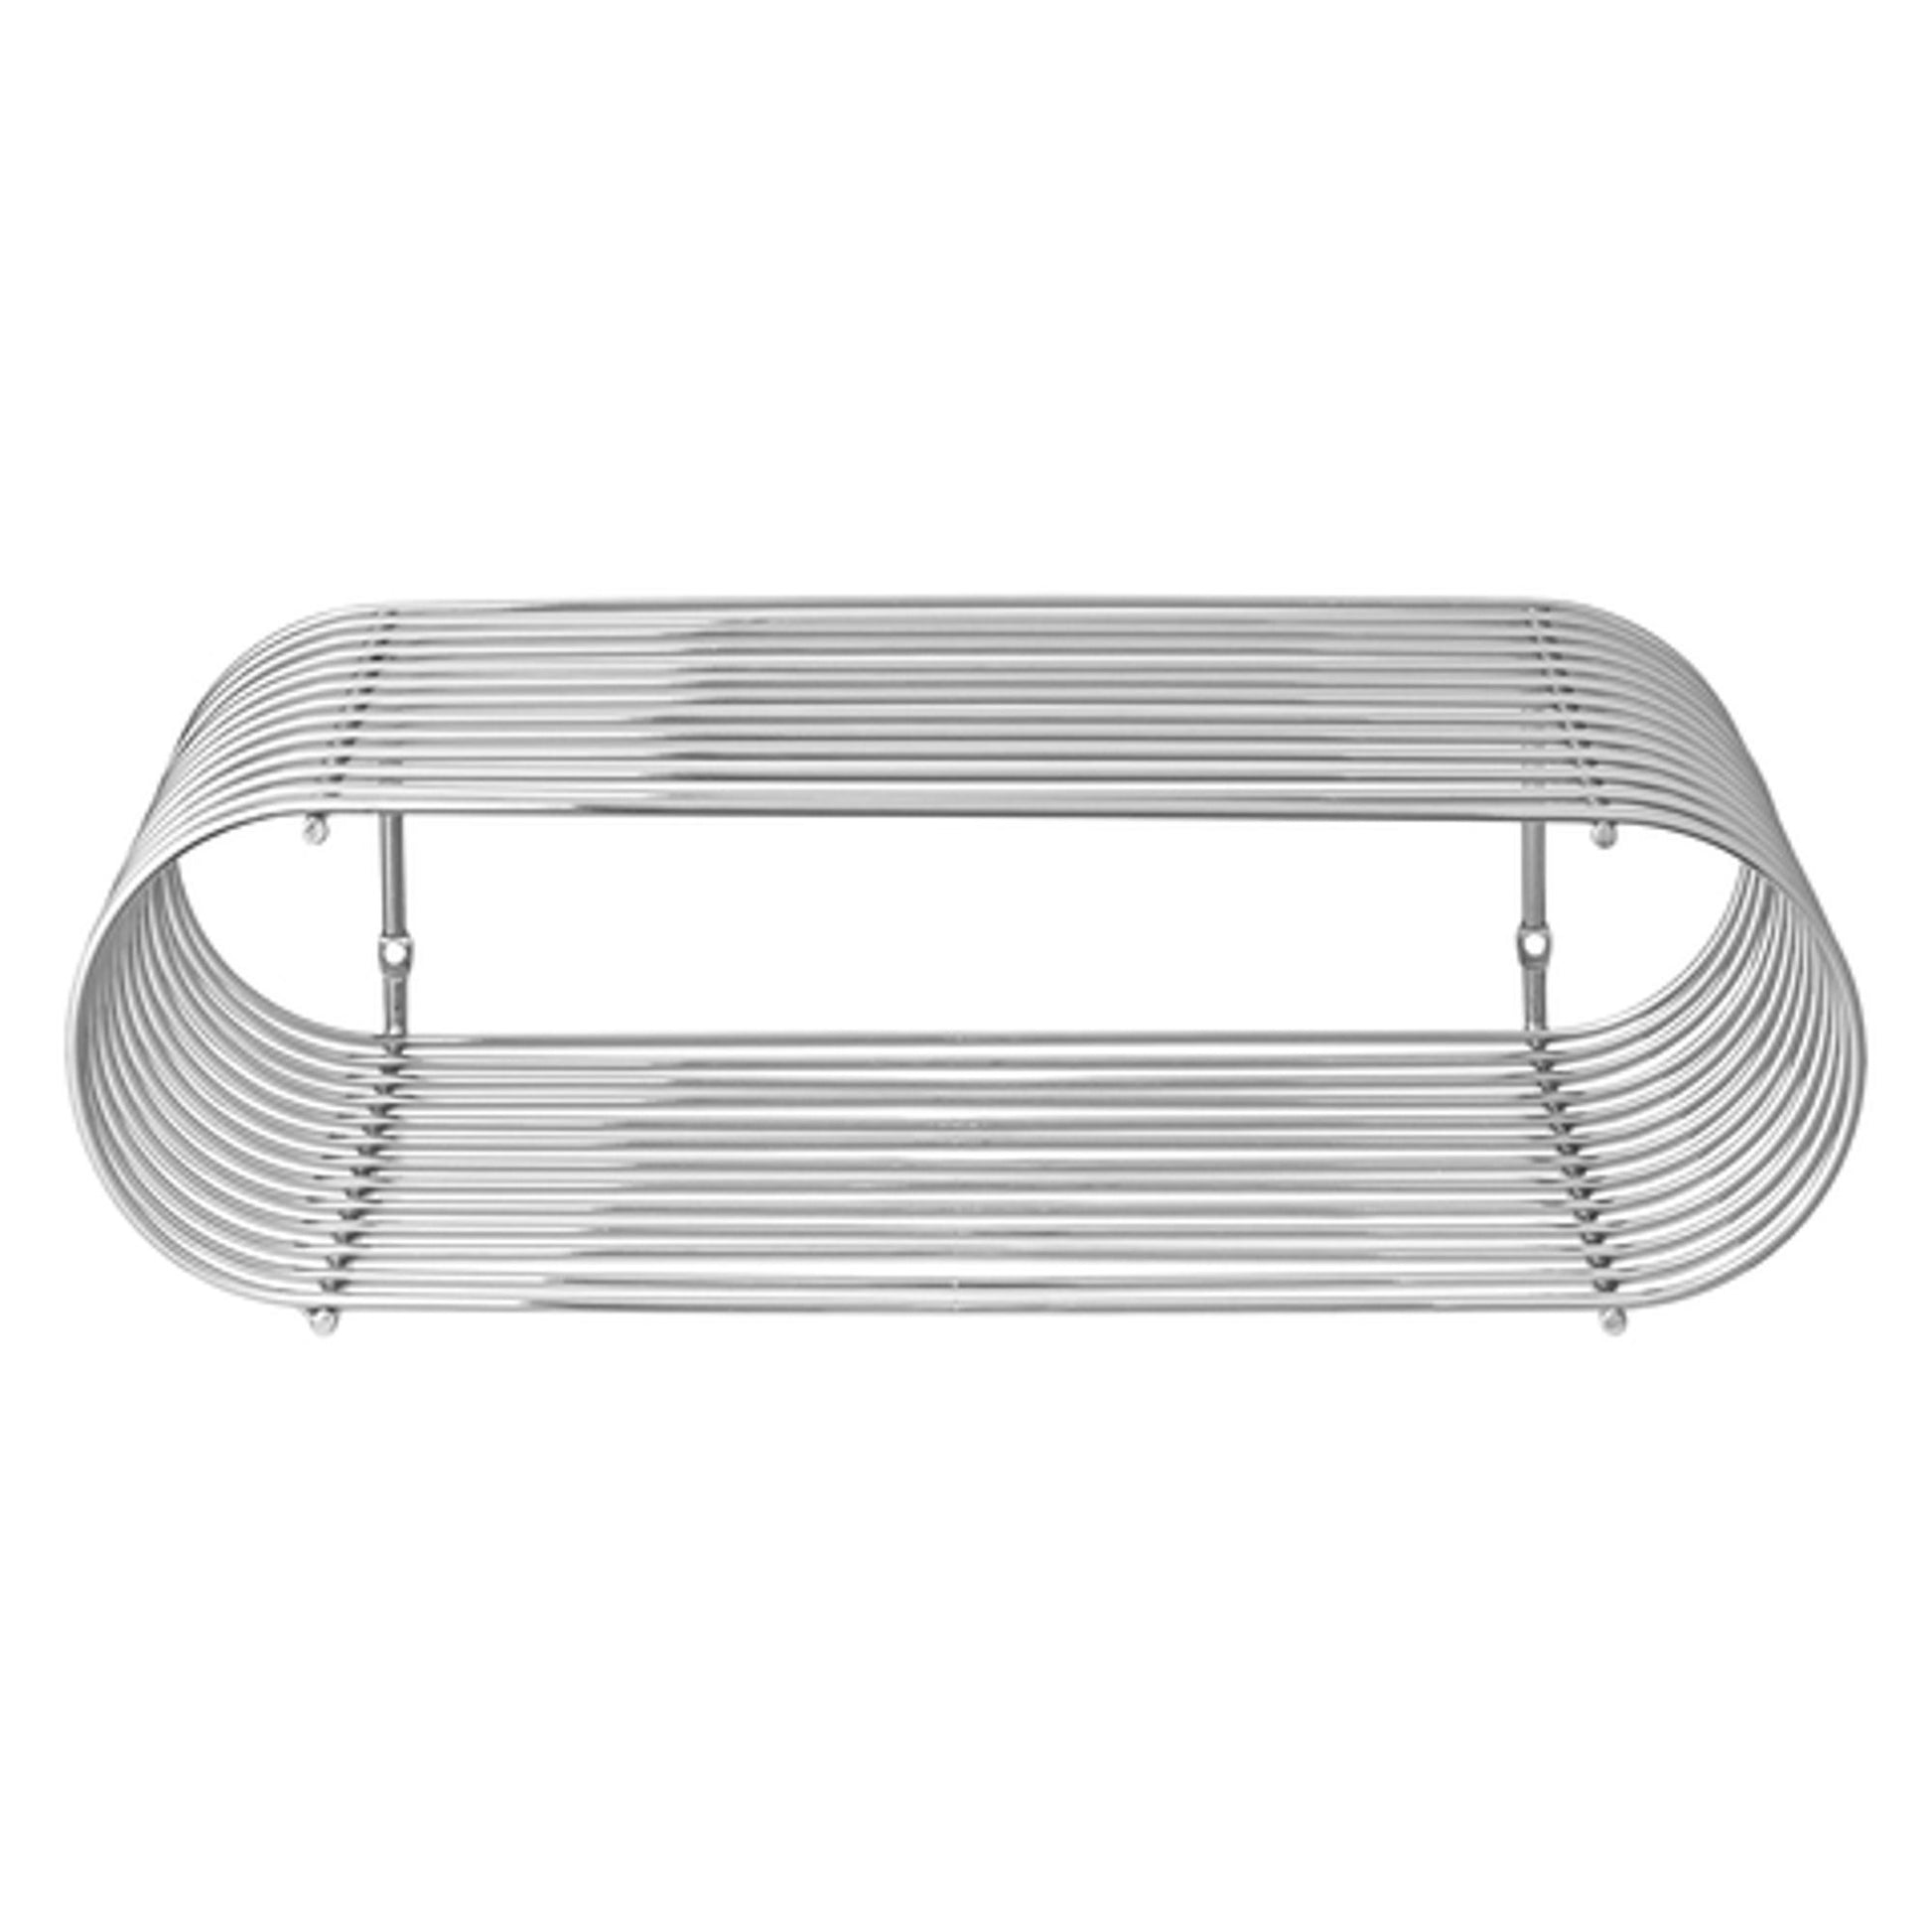 CURVA Shelf H12 cm by AYTM #Silver